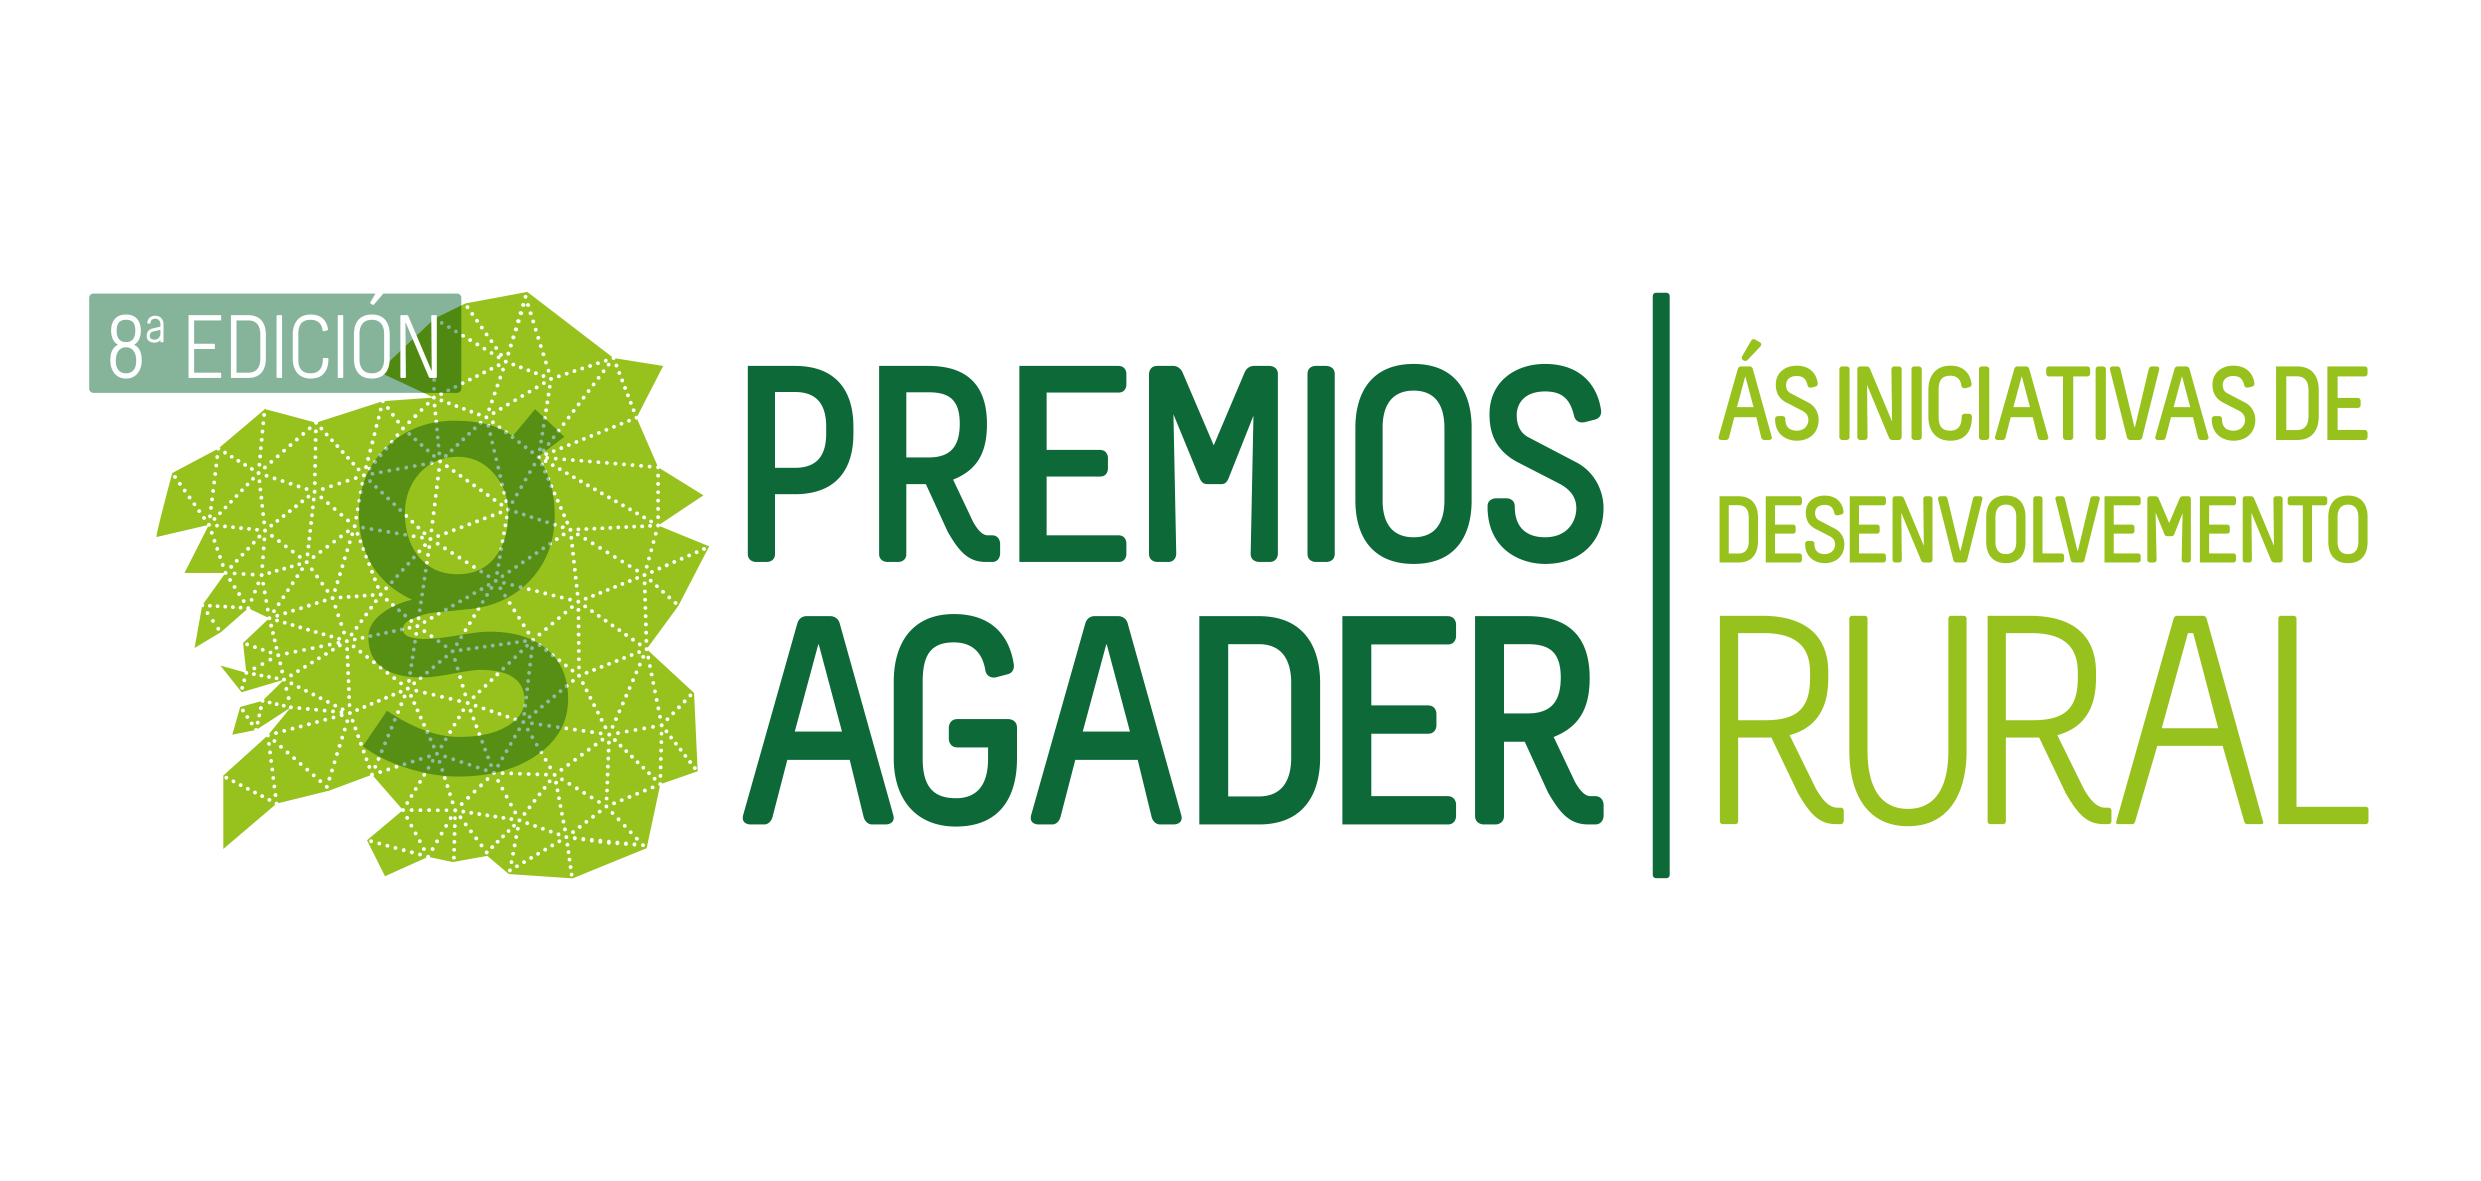 8ª Edición premios Agader